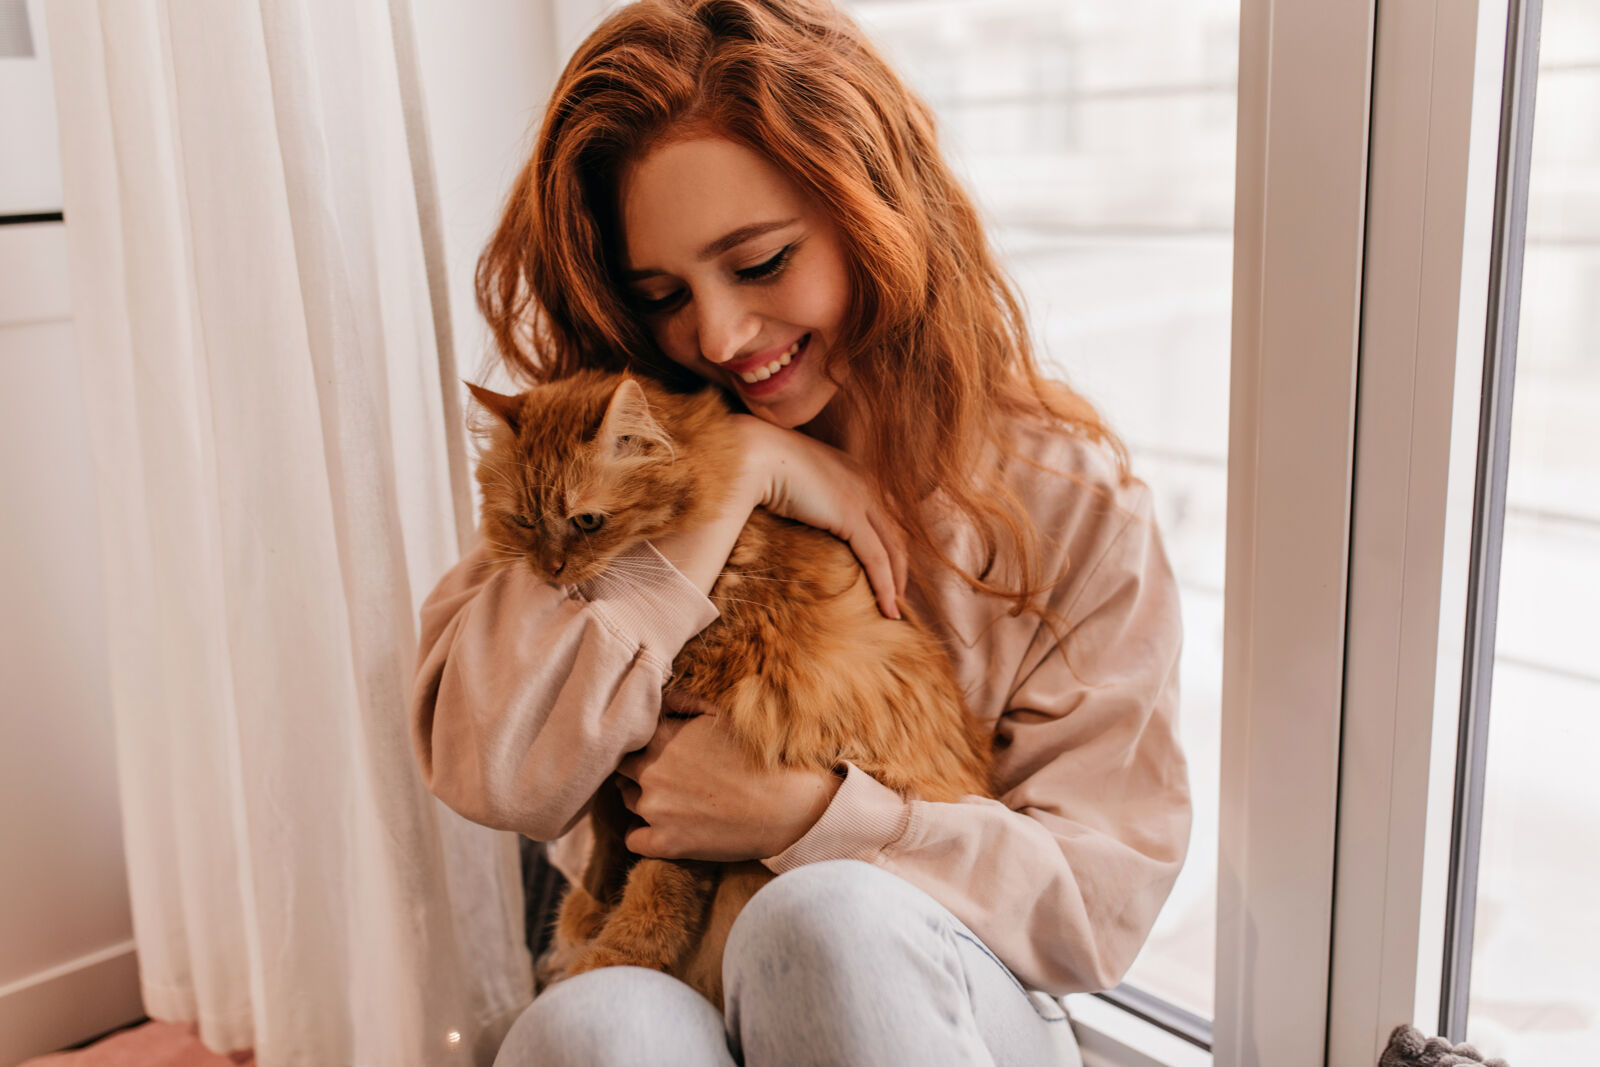 Dziewczyna w rudych włosach przytula rudego kota